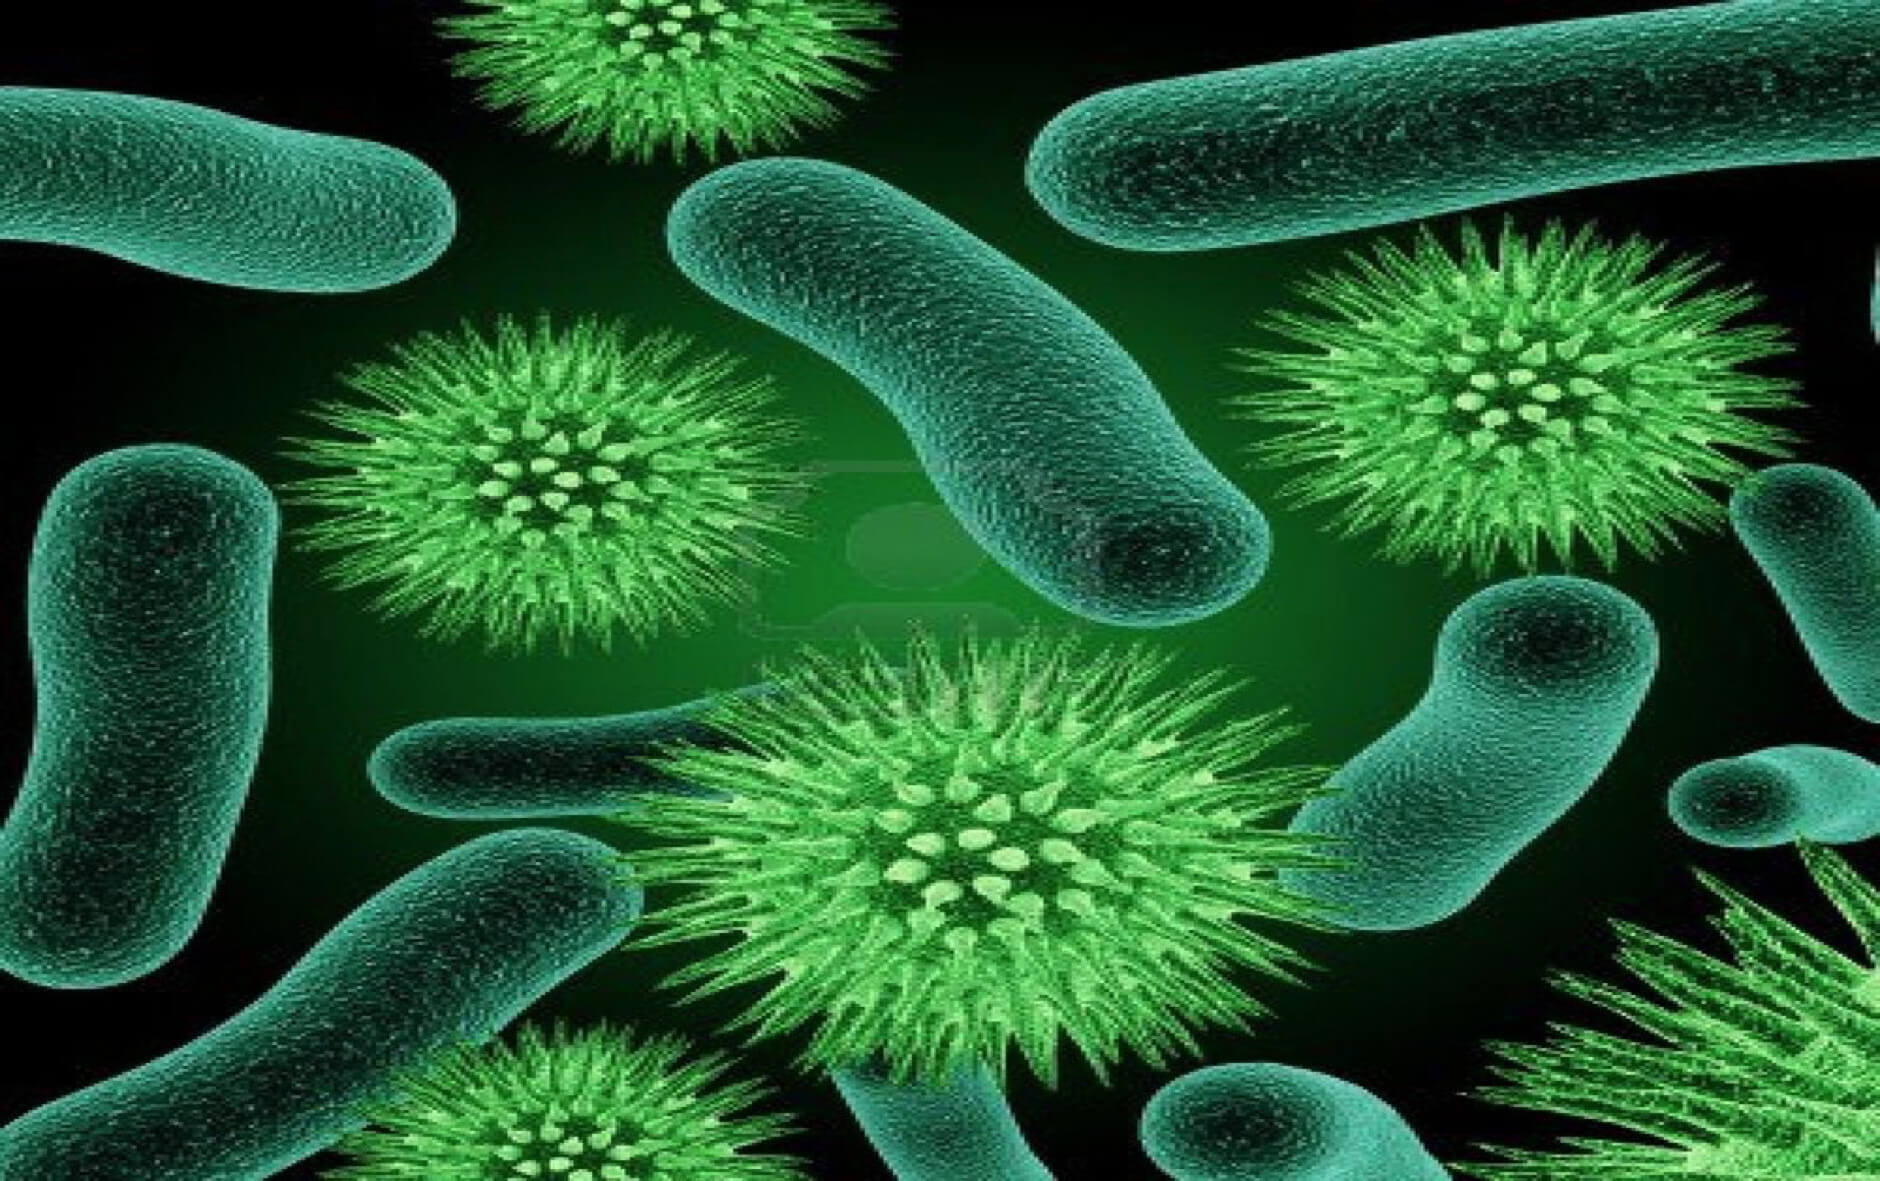 Vi khuẩn - tác nhân gây ra những bệnh lý nhiễm trùng da